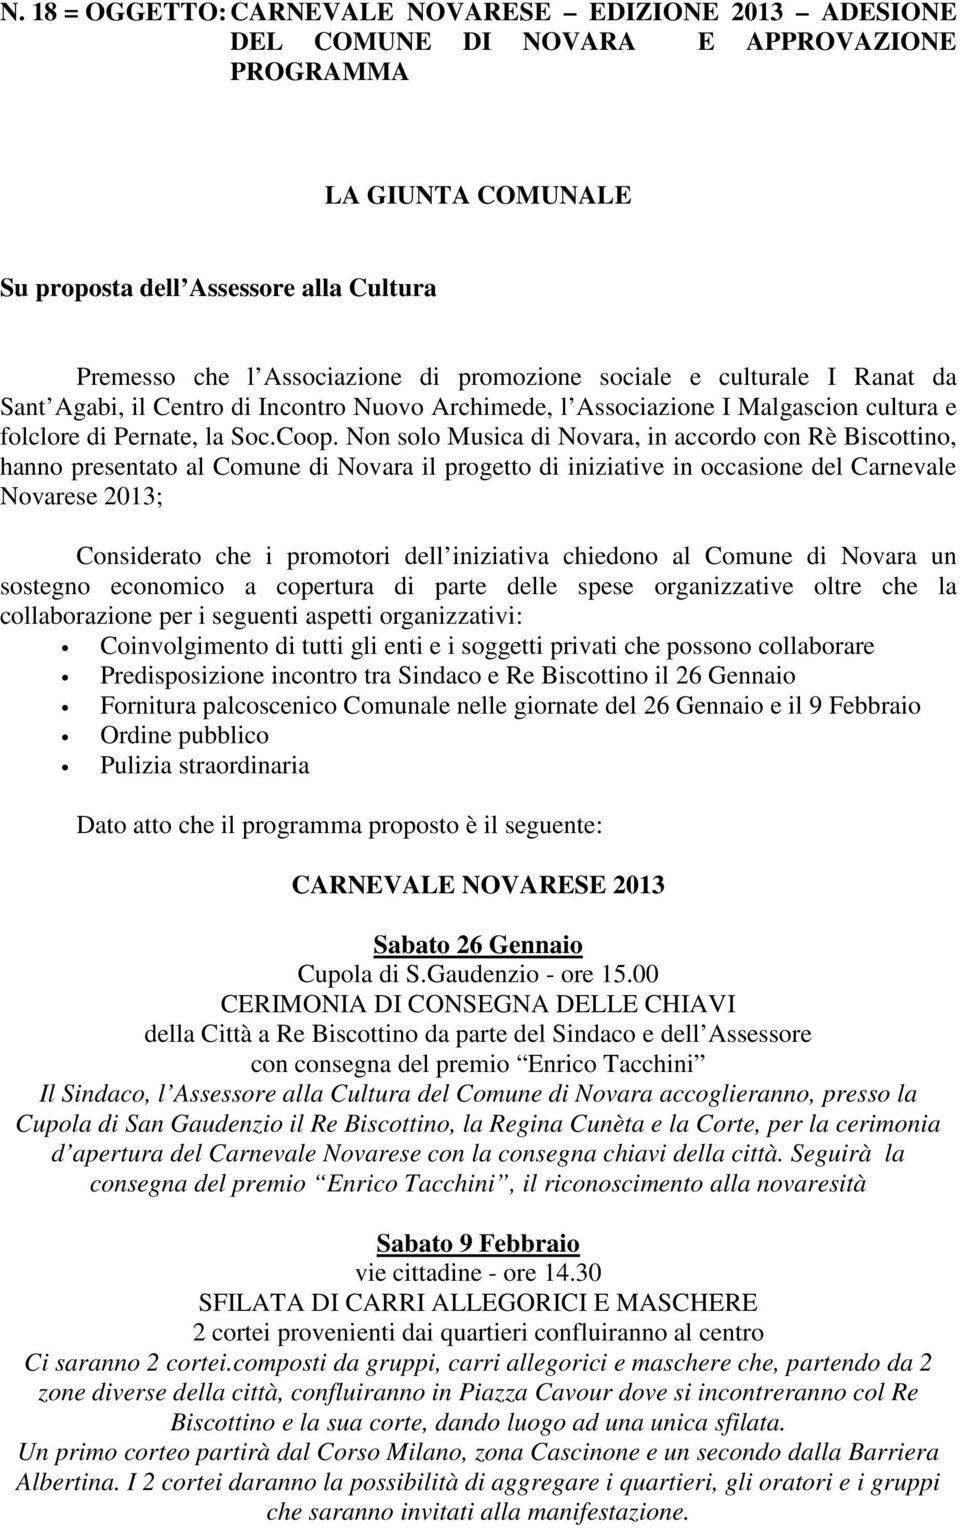 Non solo Musica di Novara, in accordo con Rè Biscottino, hanno presentato al Comune di Novara il progetto di iniziative in occasione del Carnevale Novarese 2013; Considerato che i promotori dell